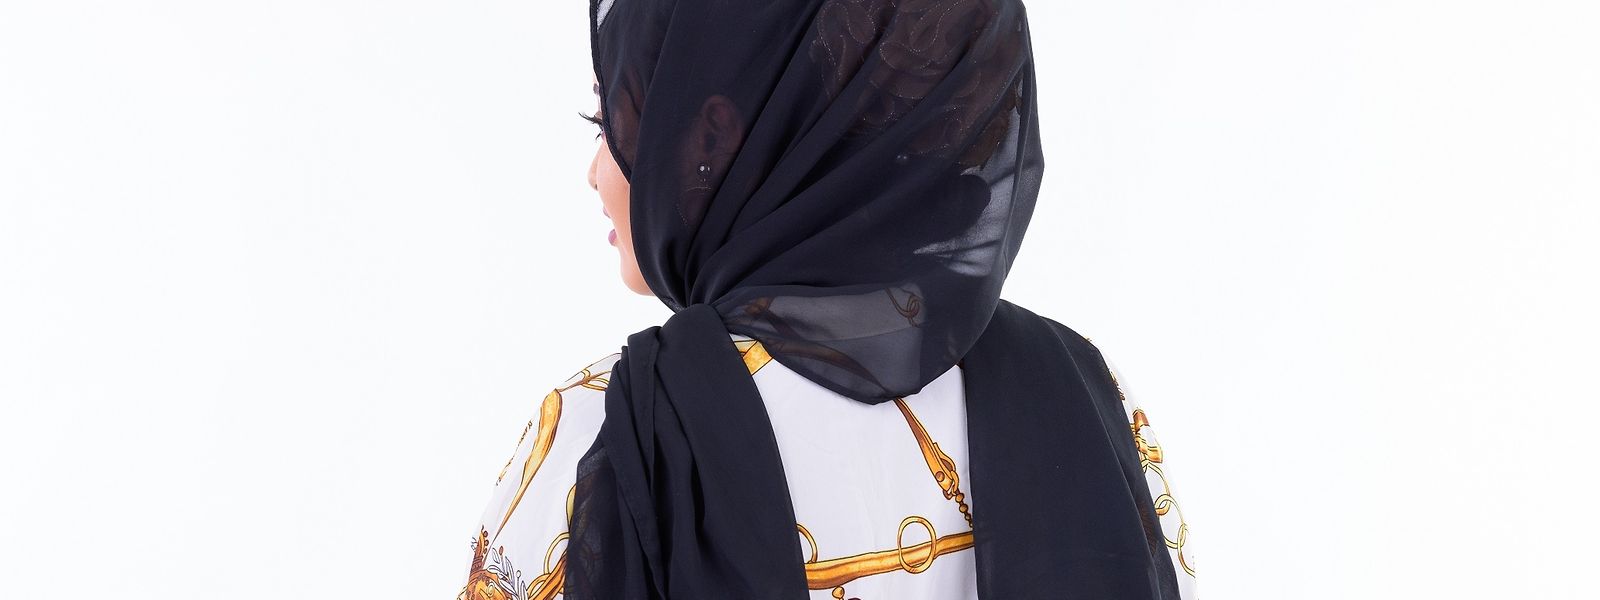 Le Pen meint, das Kopftuch sei nicht nur ein Stück Stoff, sondern ein „Marker der Radikalität des Islam“.